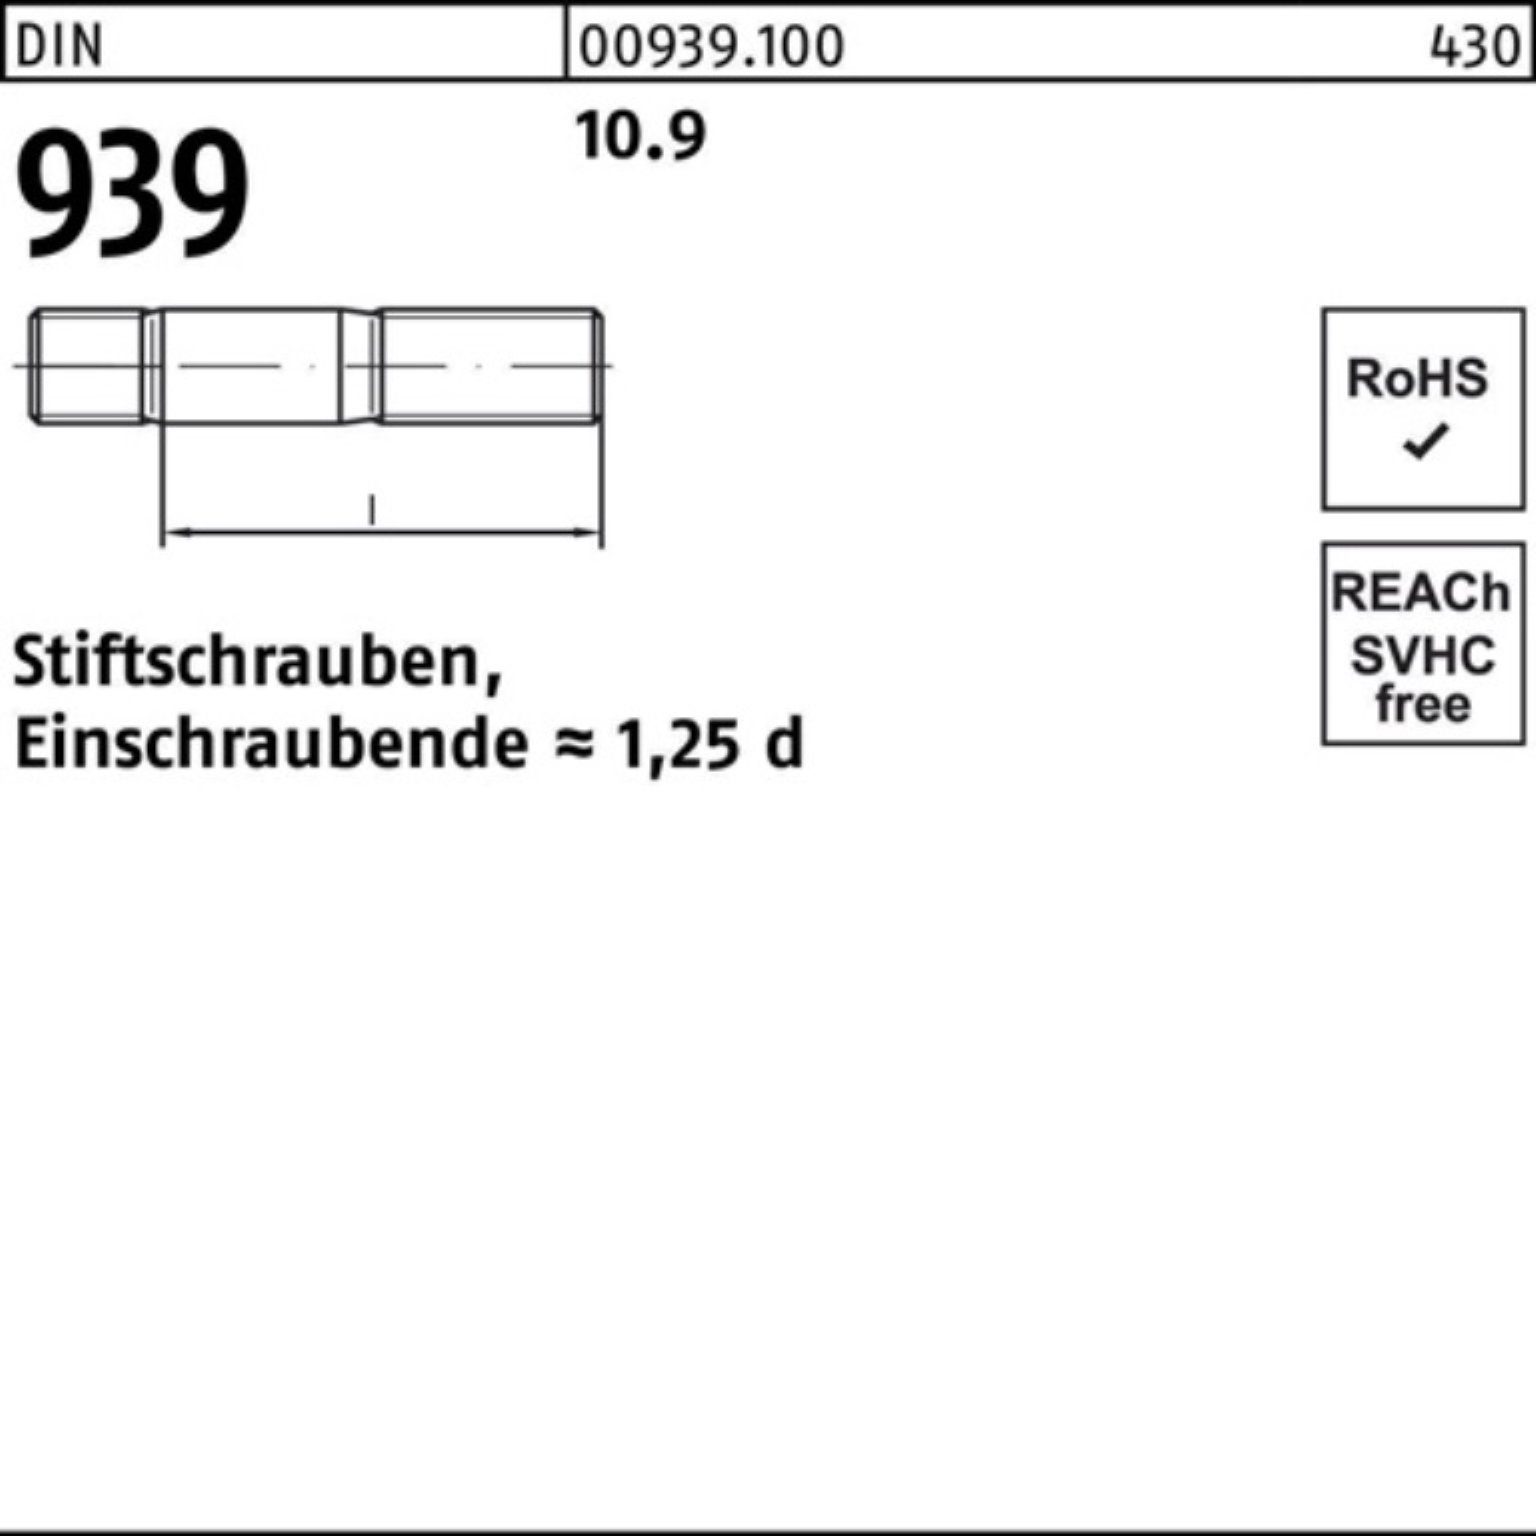 DIN 939 10.9 10 Stiftschraube 100 Einschraubende=1,25d Reyher Pack 100er Stiftschraube M16x